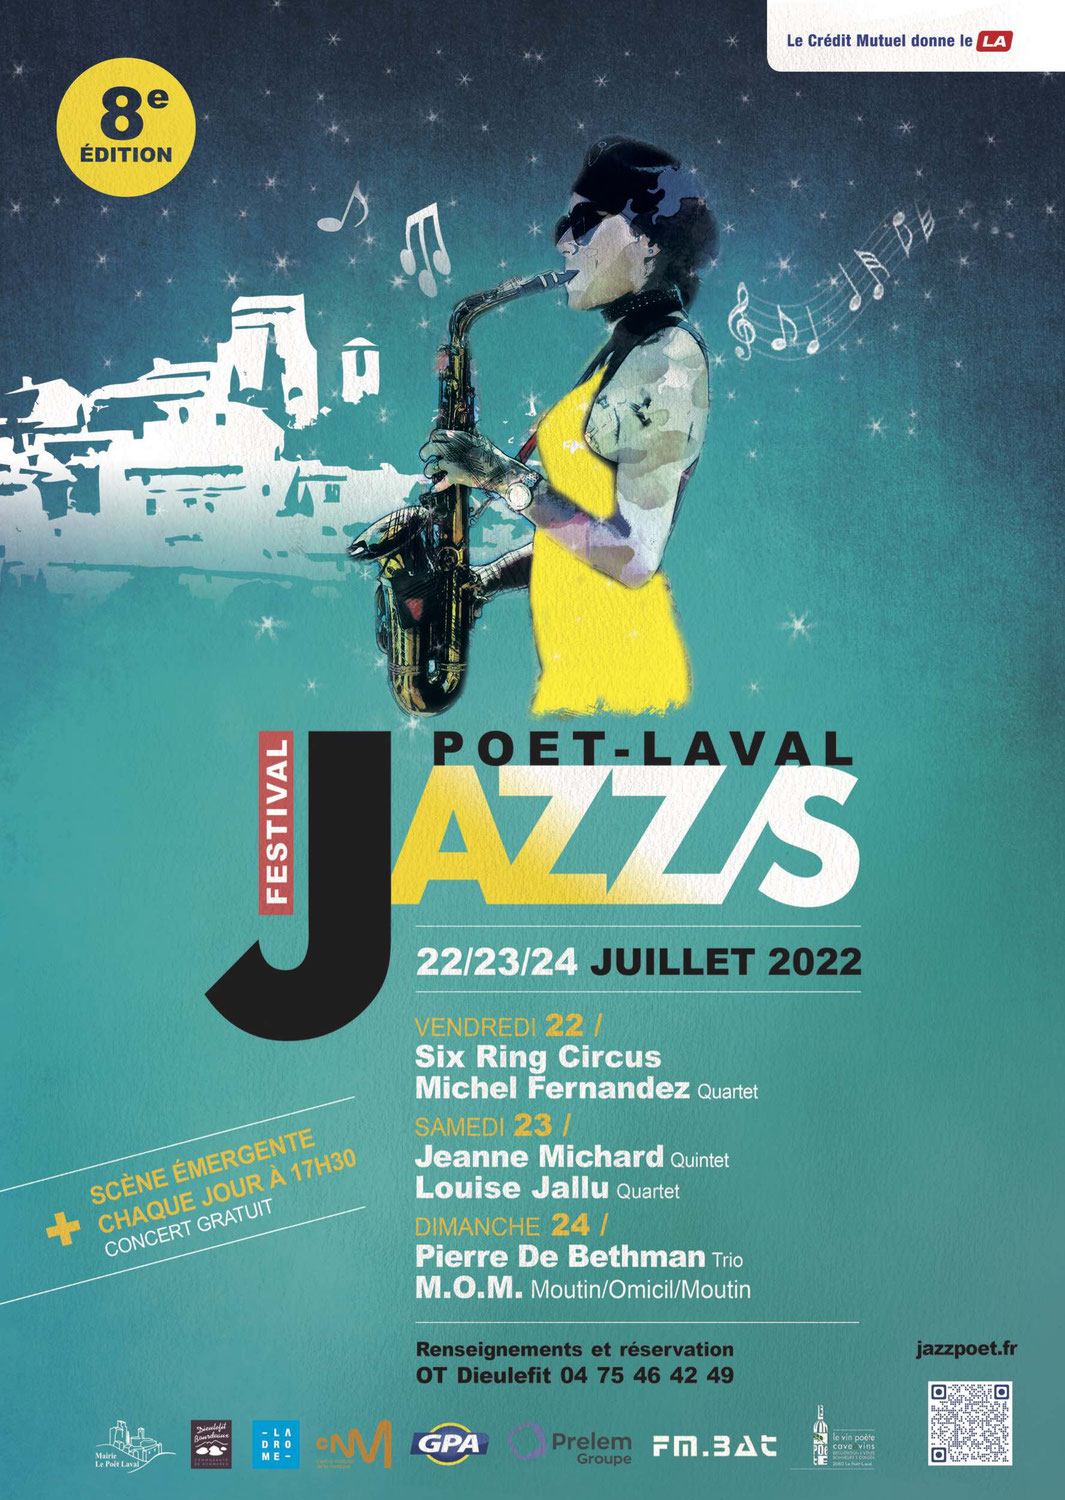 Poët Laval Jazz/s 2022